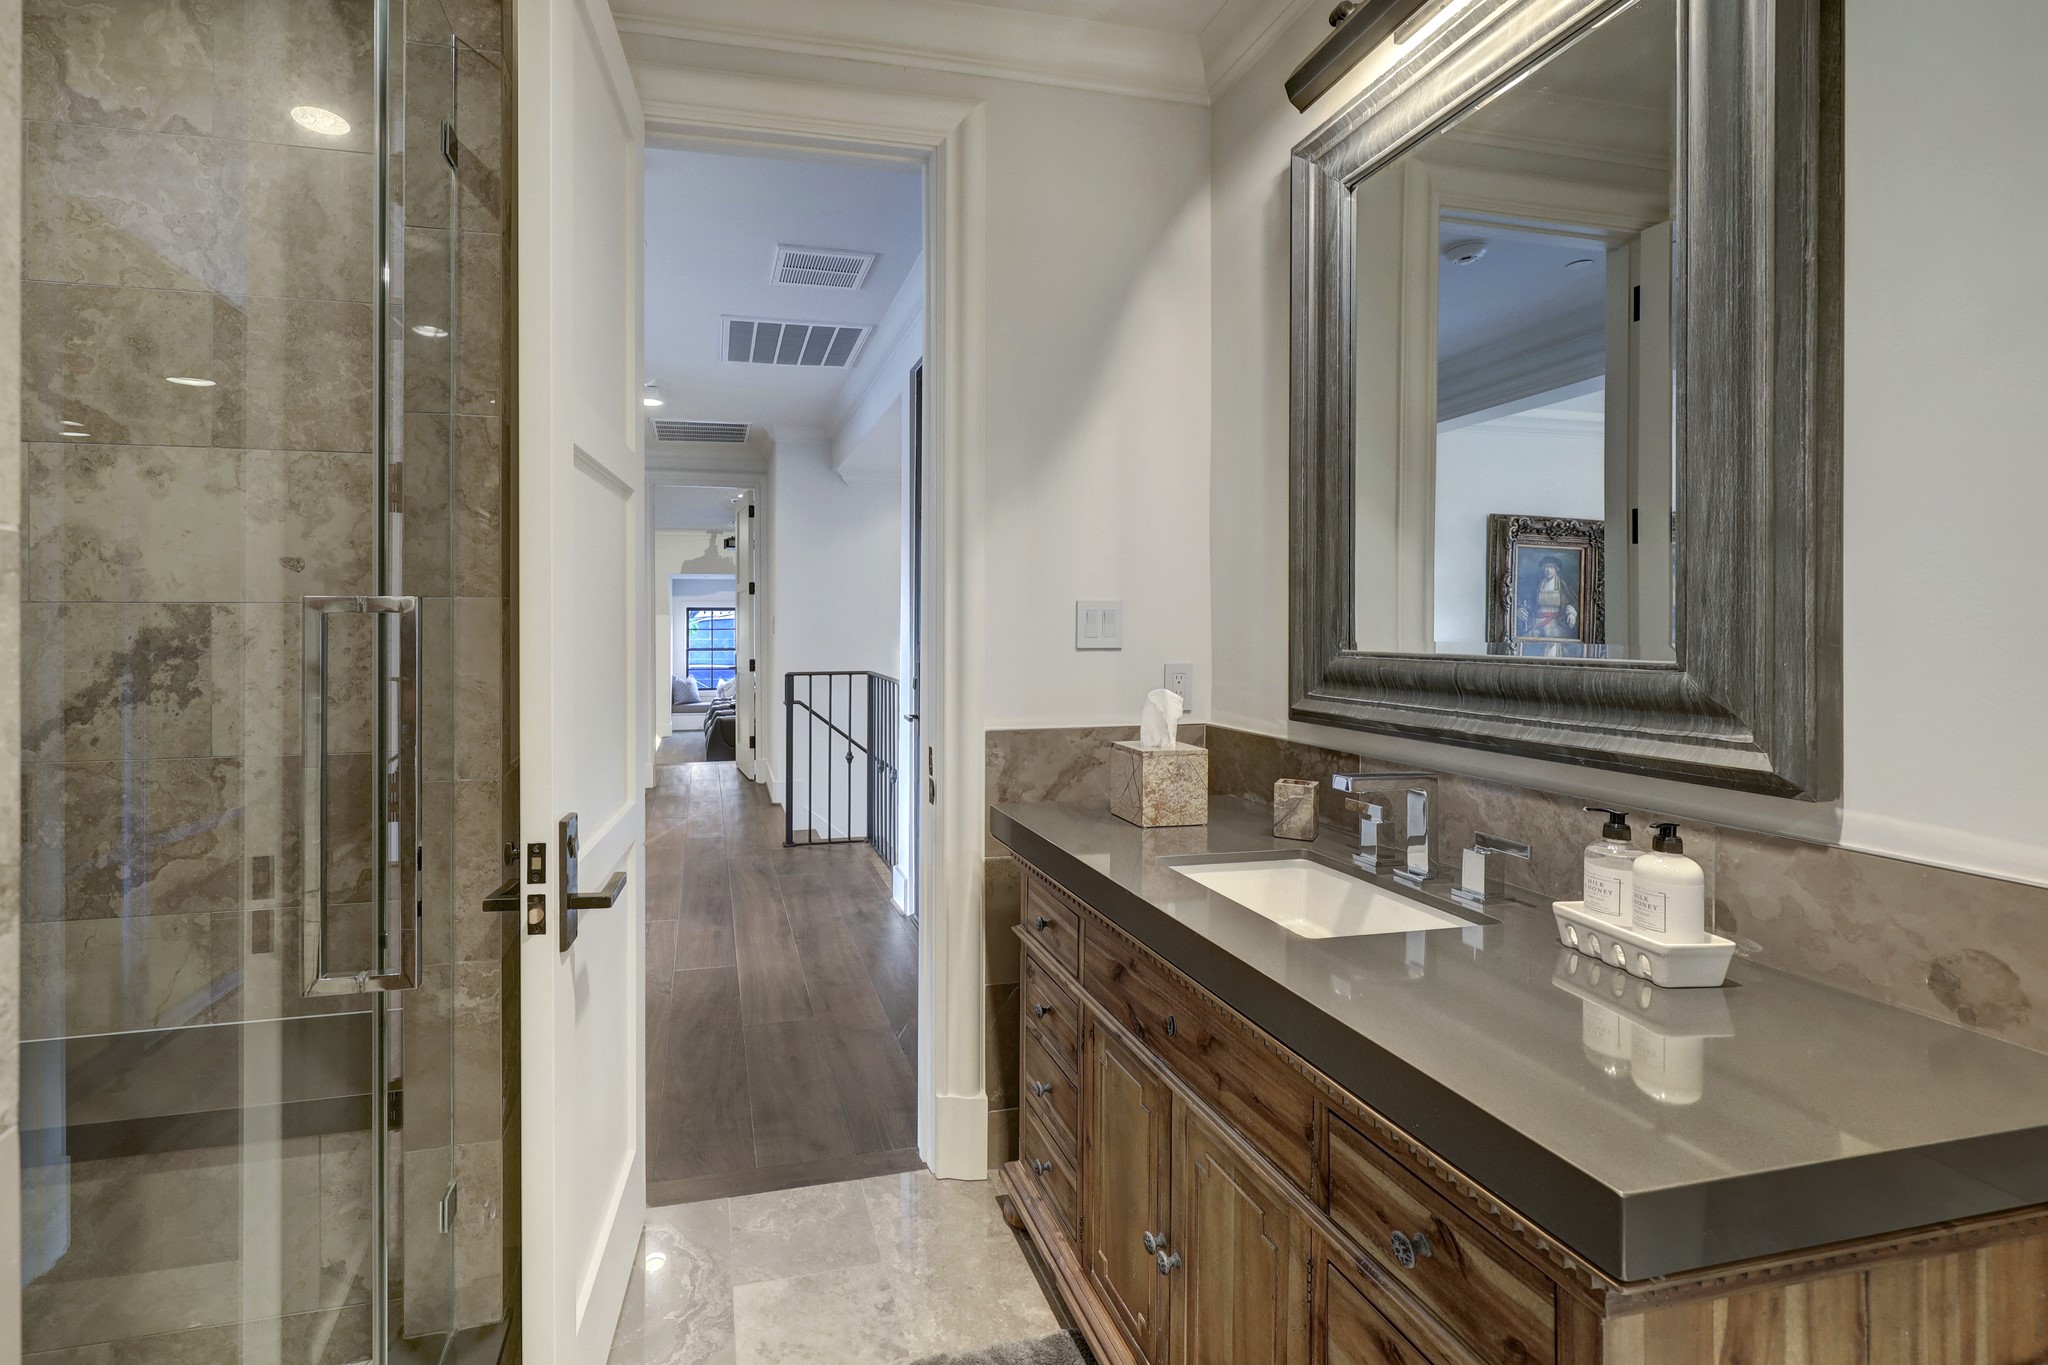 En-suite bathroom features dark grey quartz countertops and glass walk in shower.